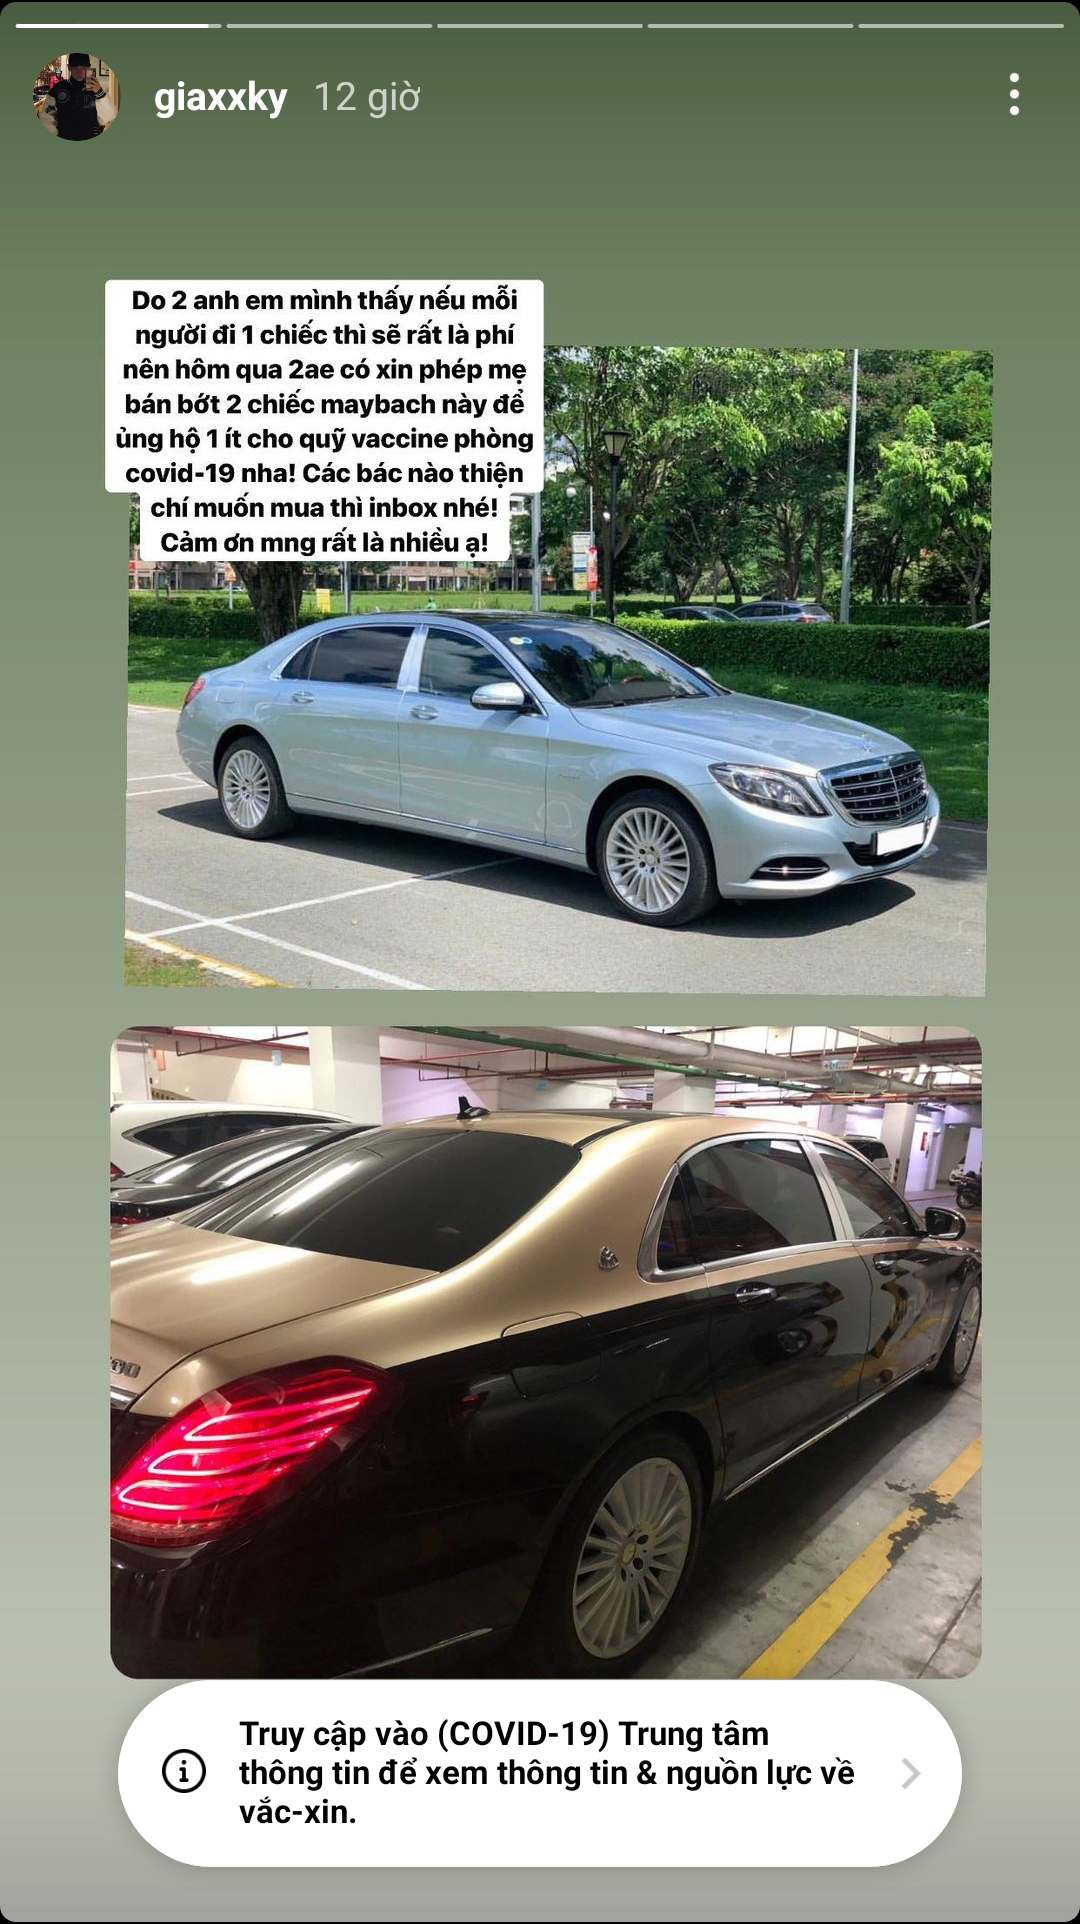 Gia kỳ rao bán 2 chiếc Mercedes-Maybach trên mạng xã hội Instagram